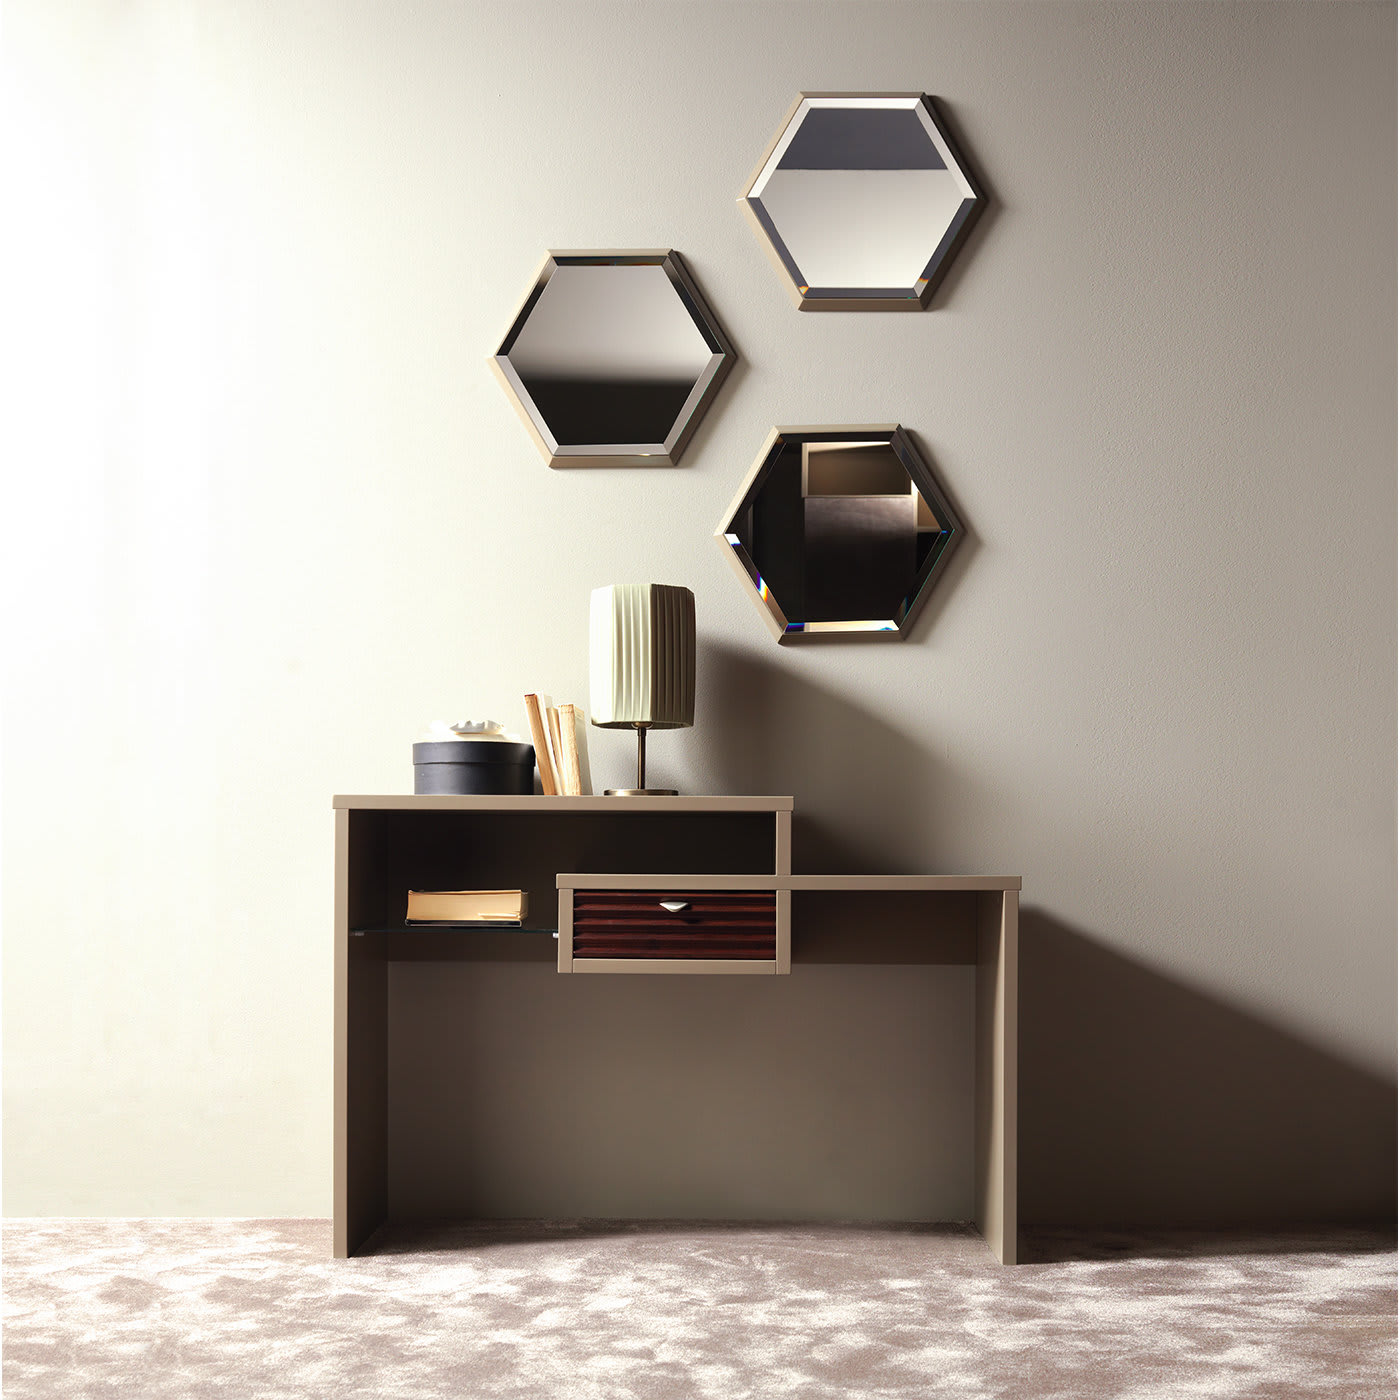 Prisma Small Hexagonal Mirror - Concept by Caroti